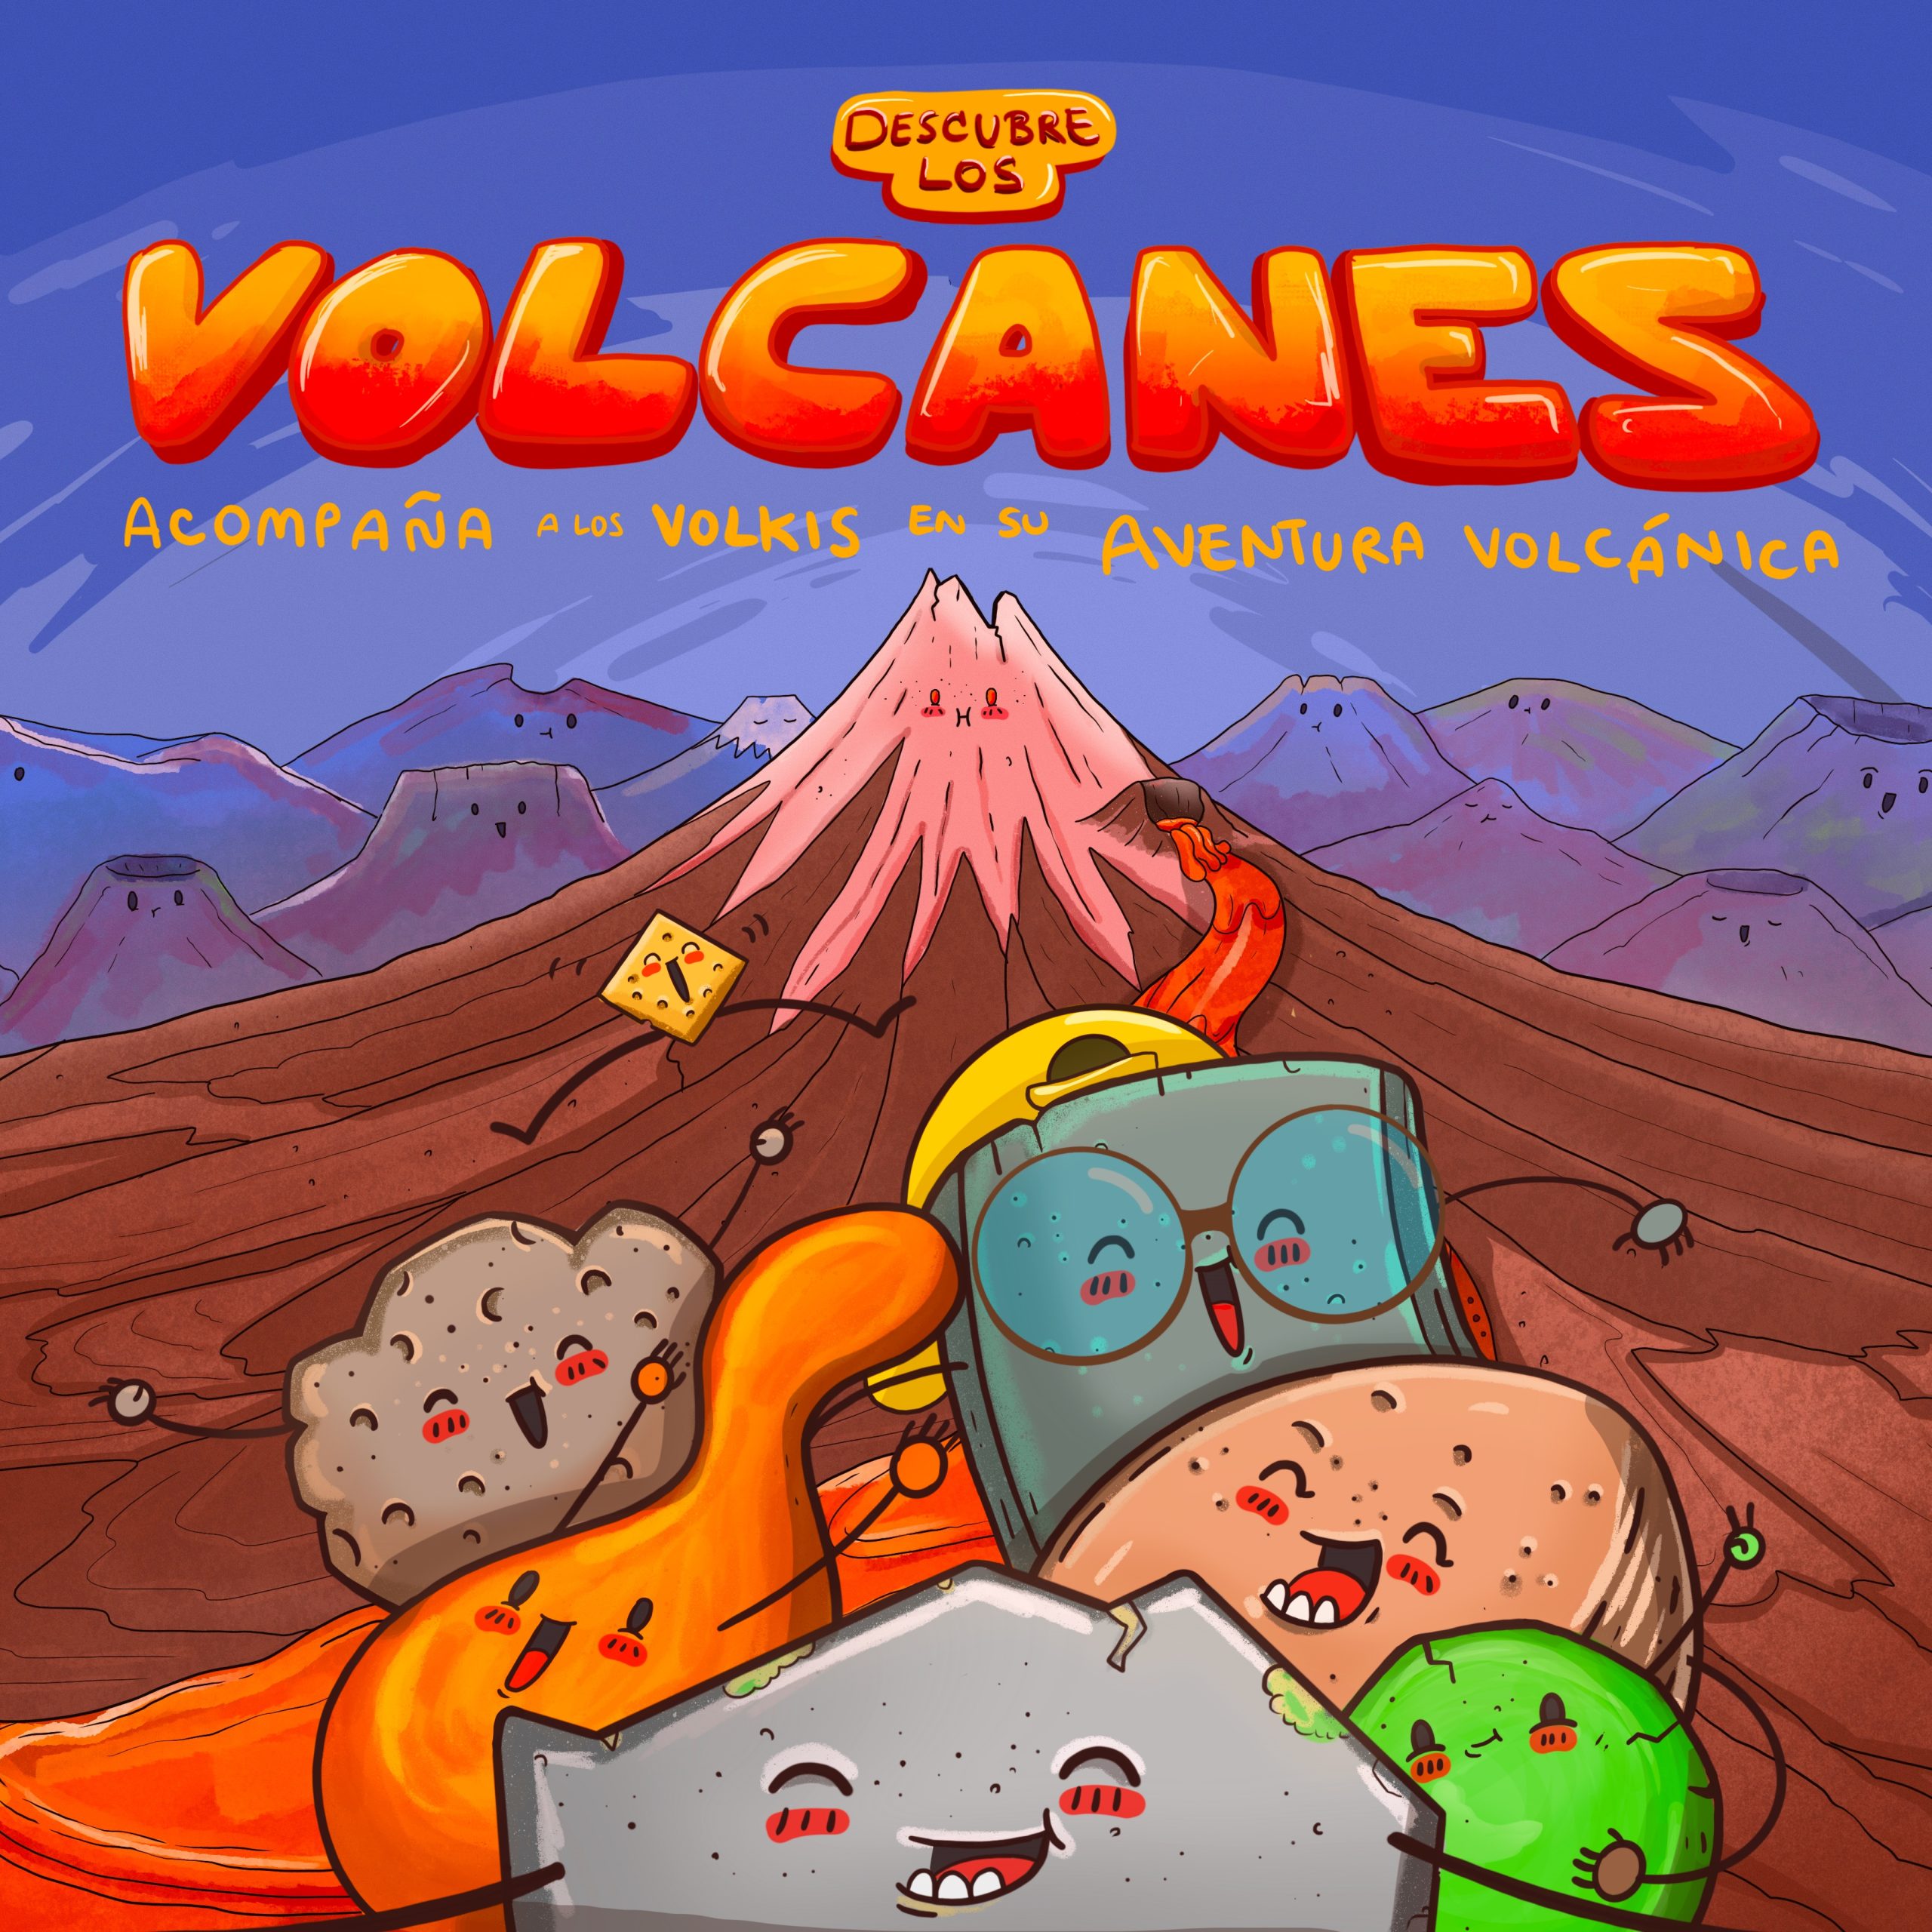 "Descubre los Volcanes"